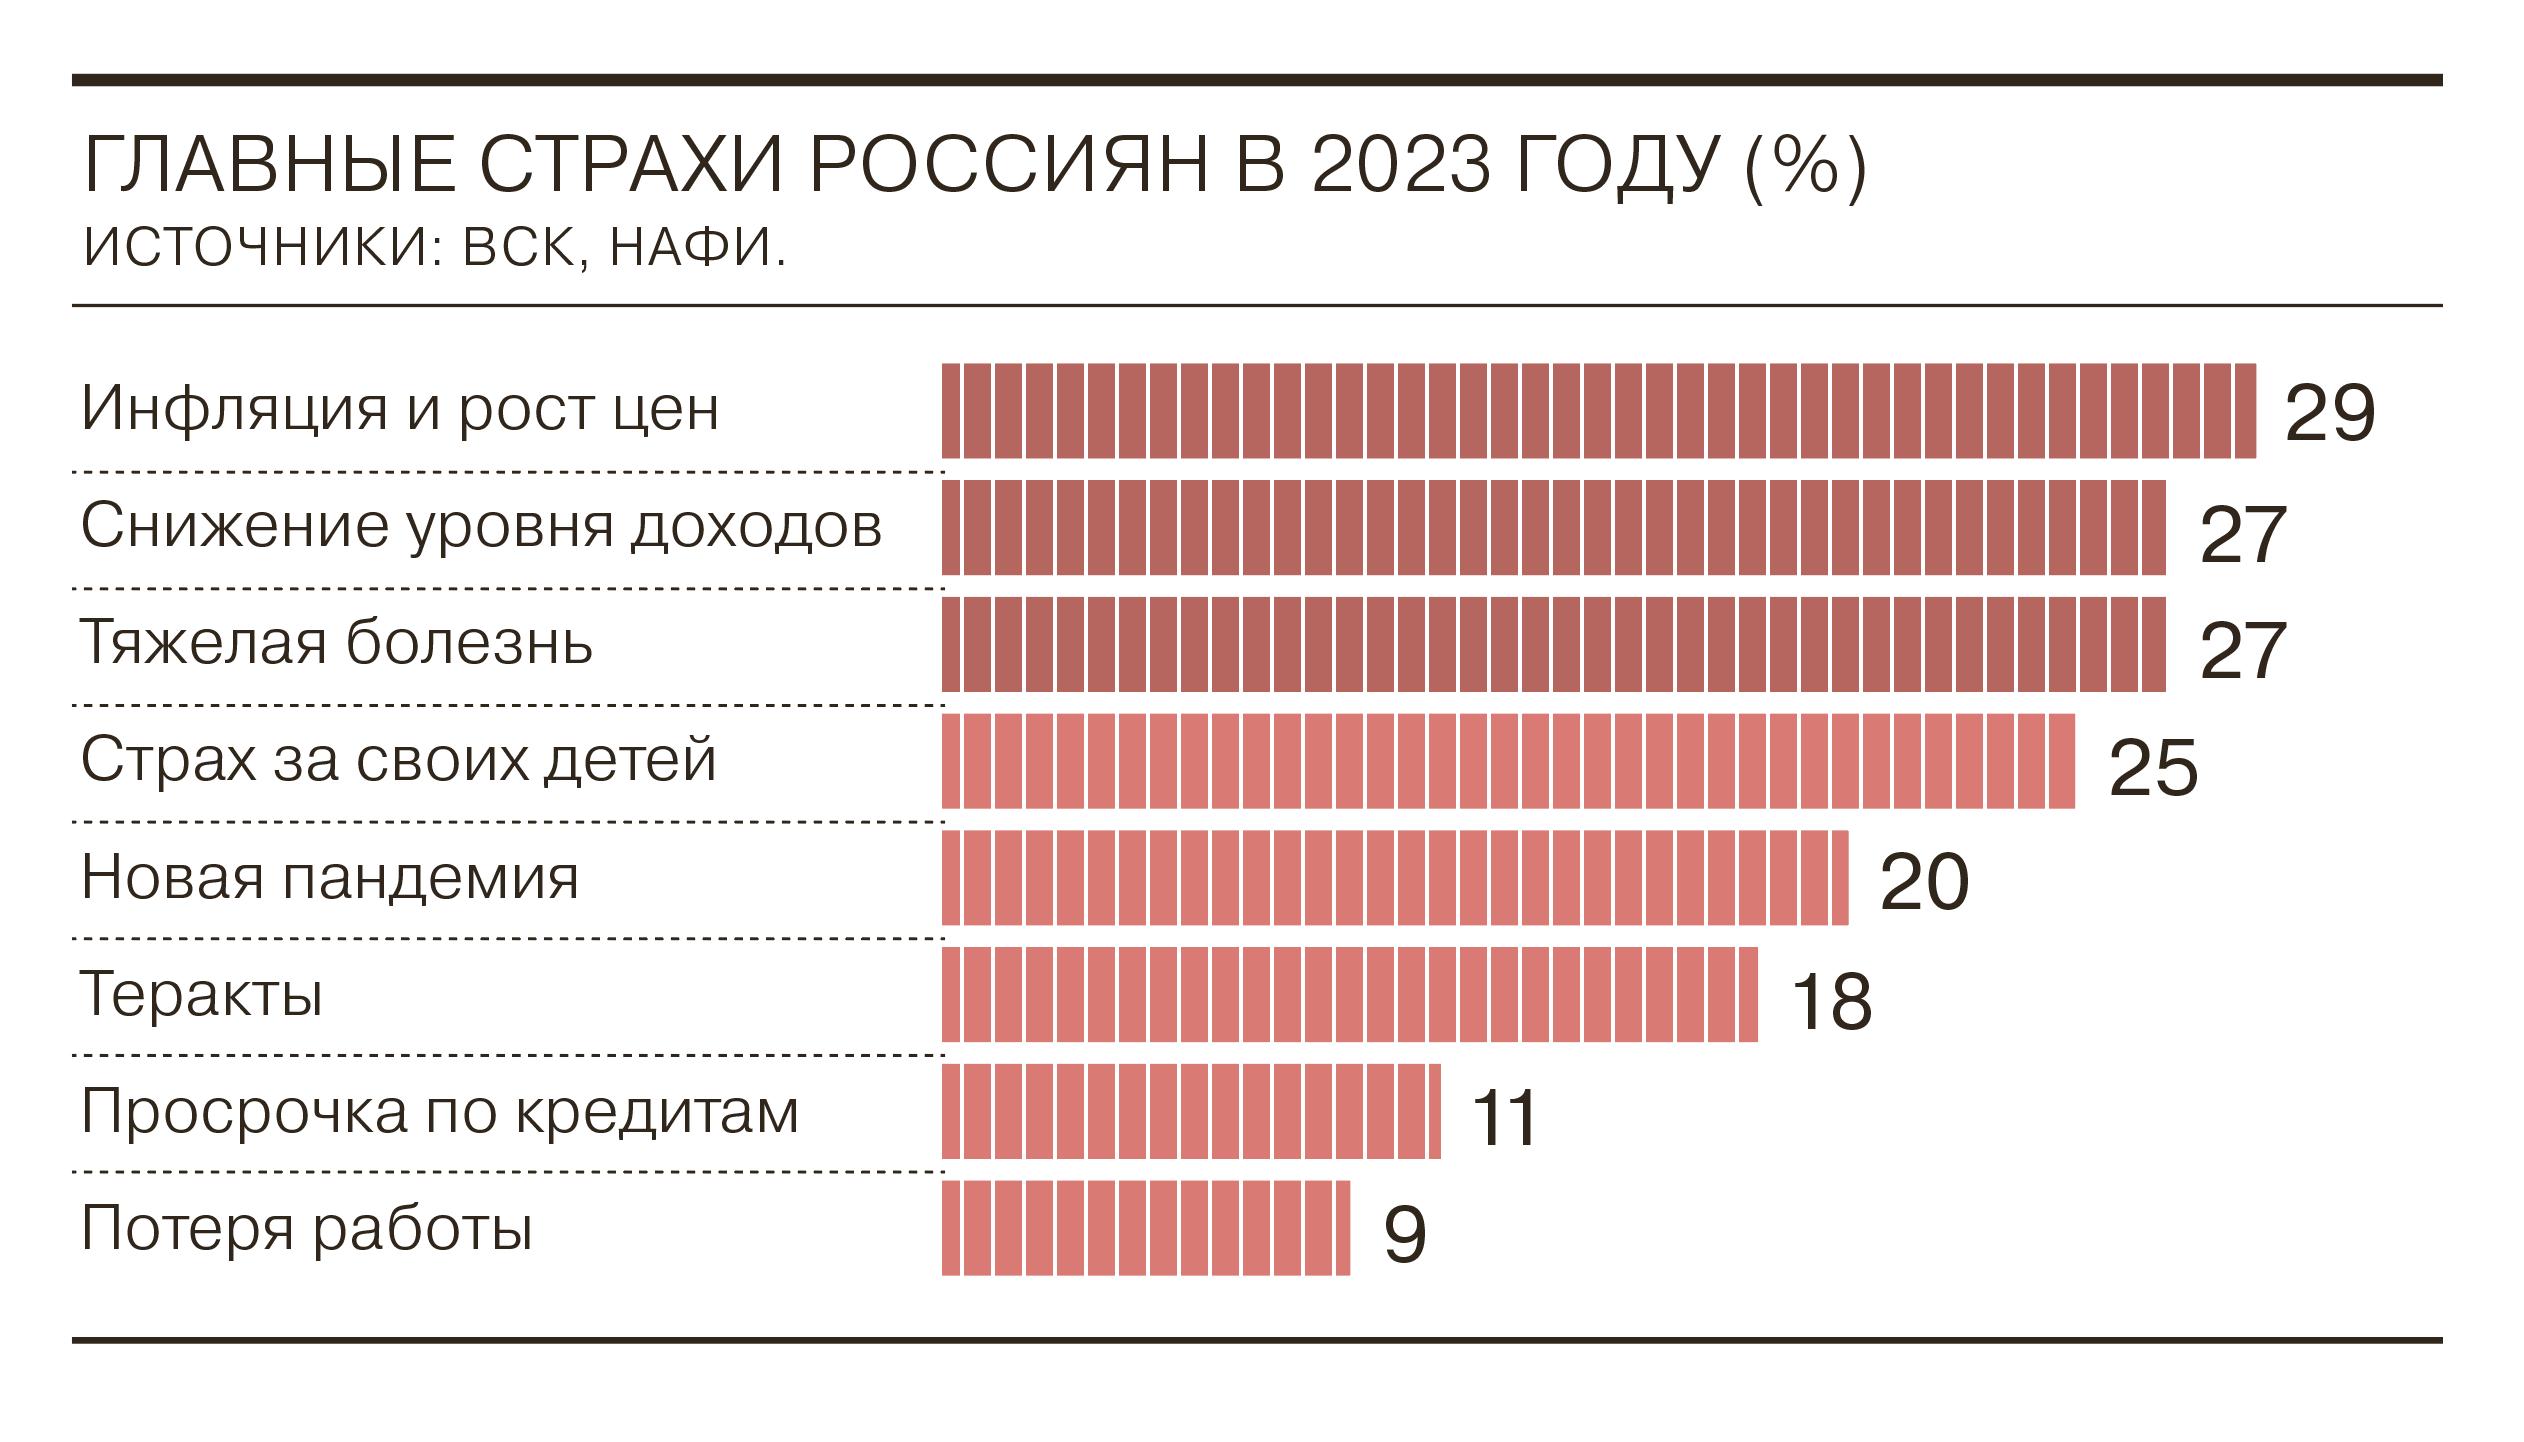 Проблемы россии 2023 год. Страхи россиян 2023. Доходы россиян в 2023. Доходность россиян в 2023 году. Инфляция в России в 2023.